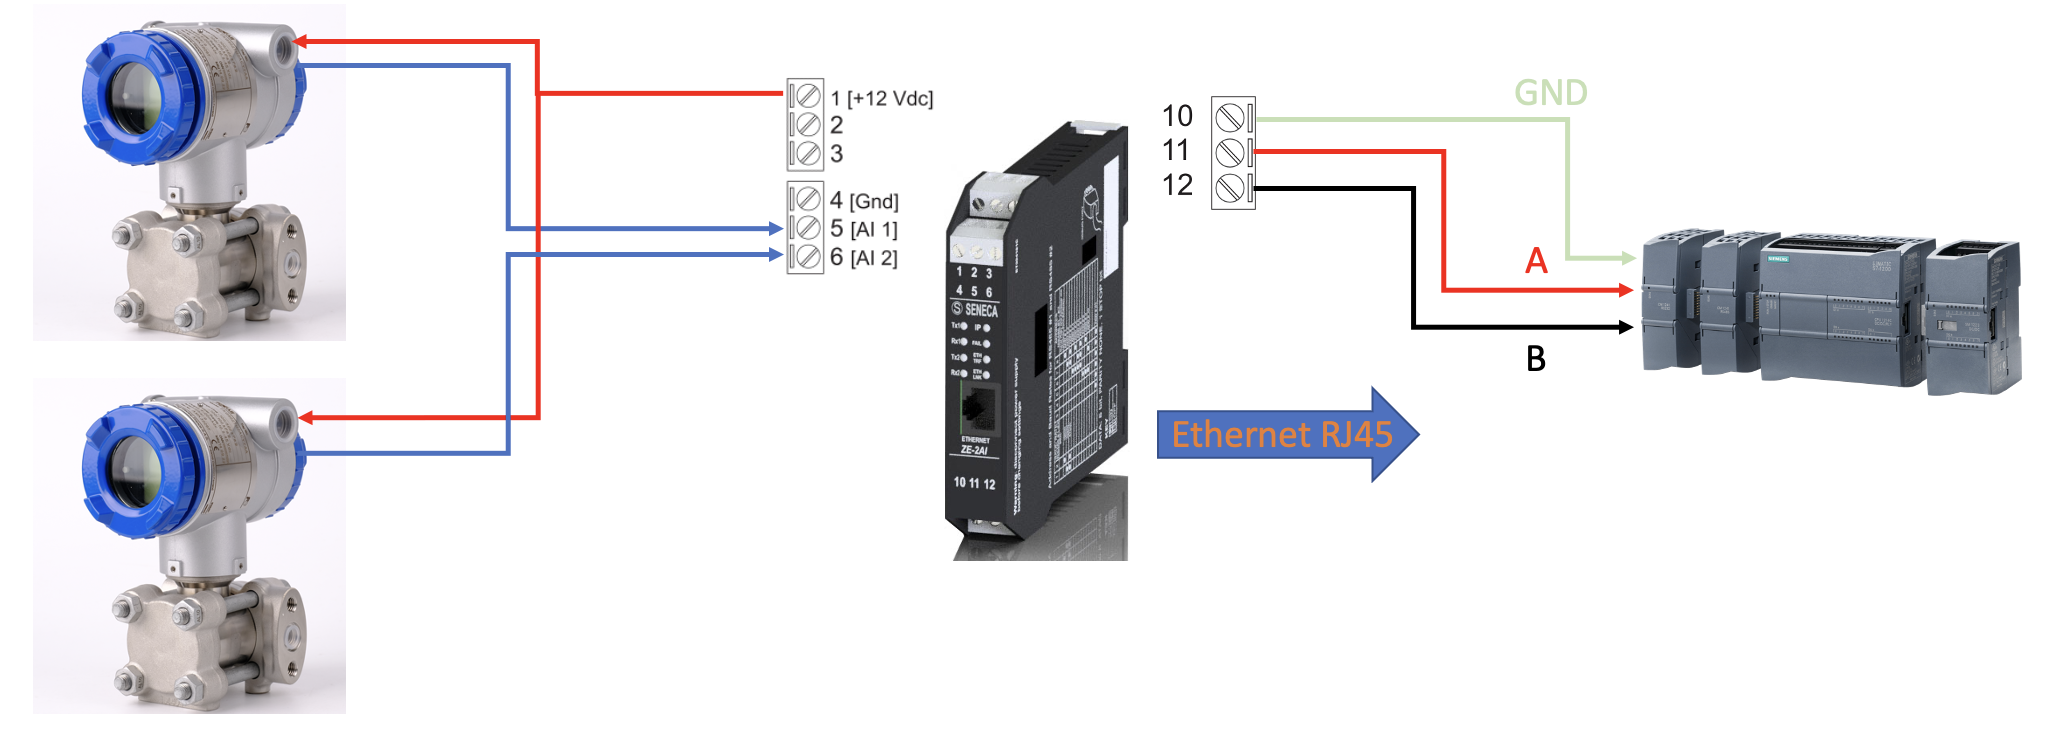 Bộ chuyển đổi 4-20mA sang Modbus TCP-IP